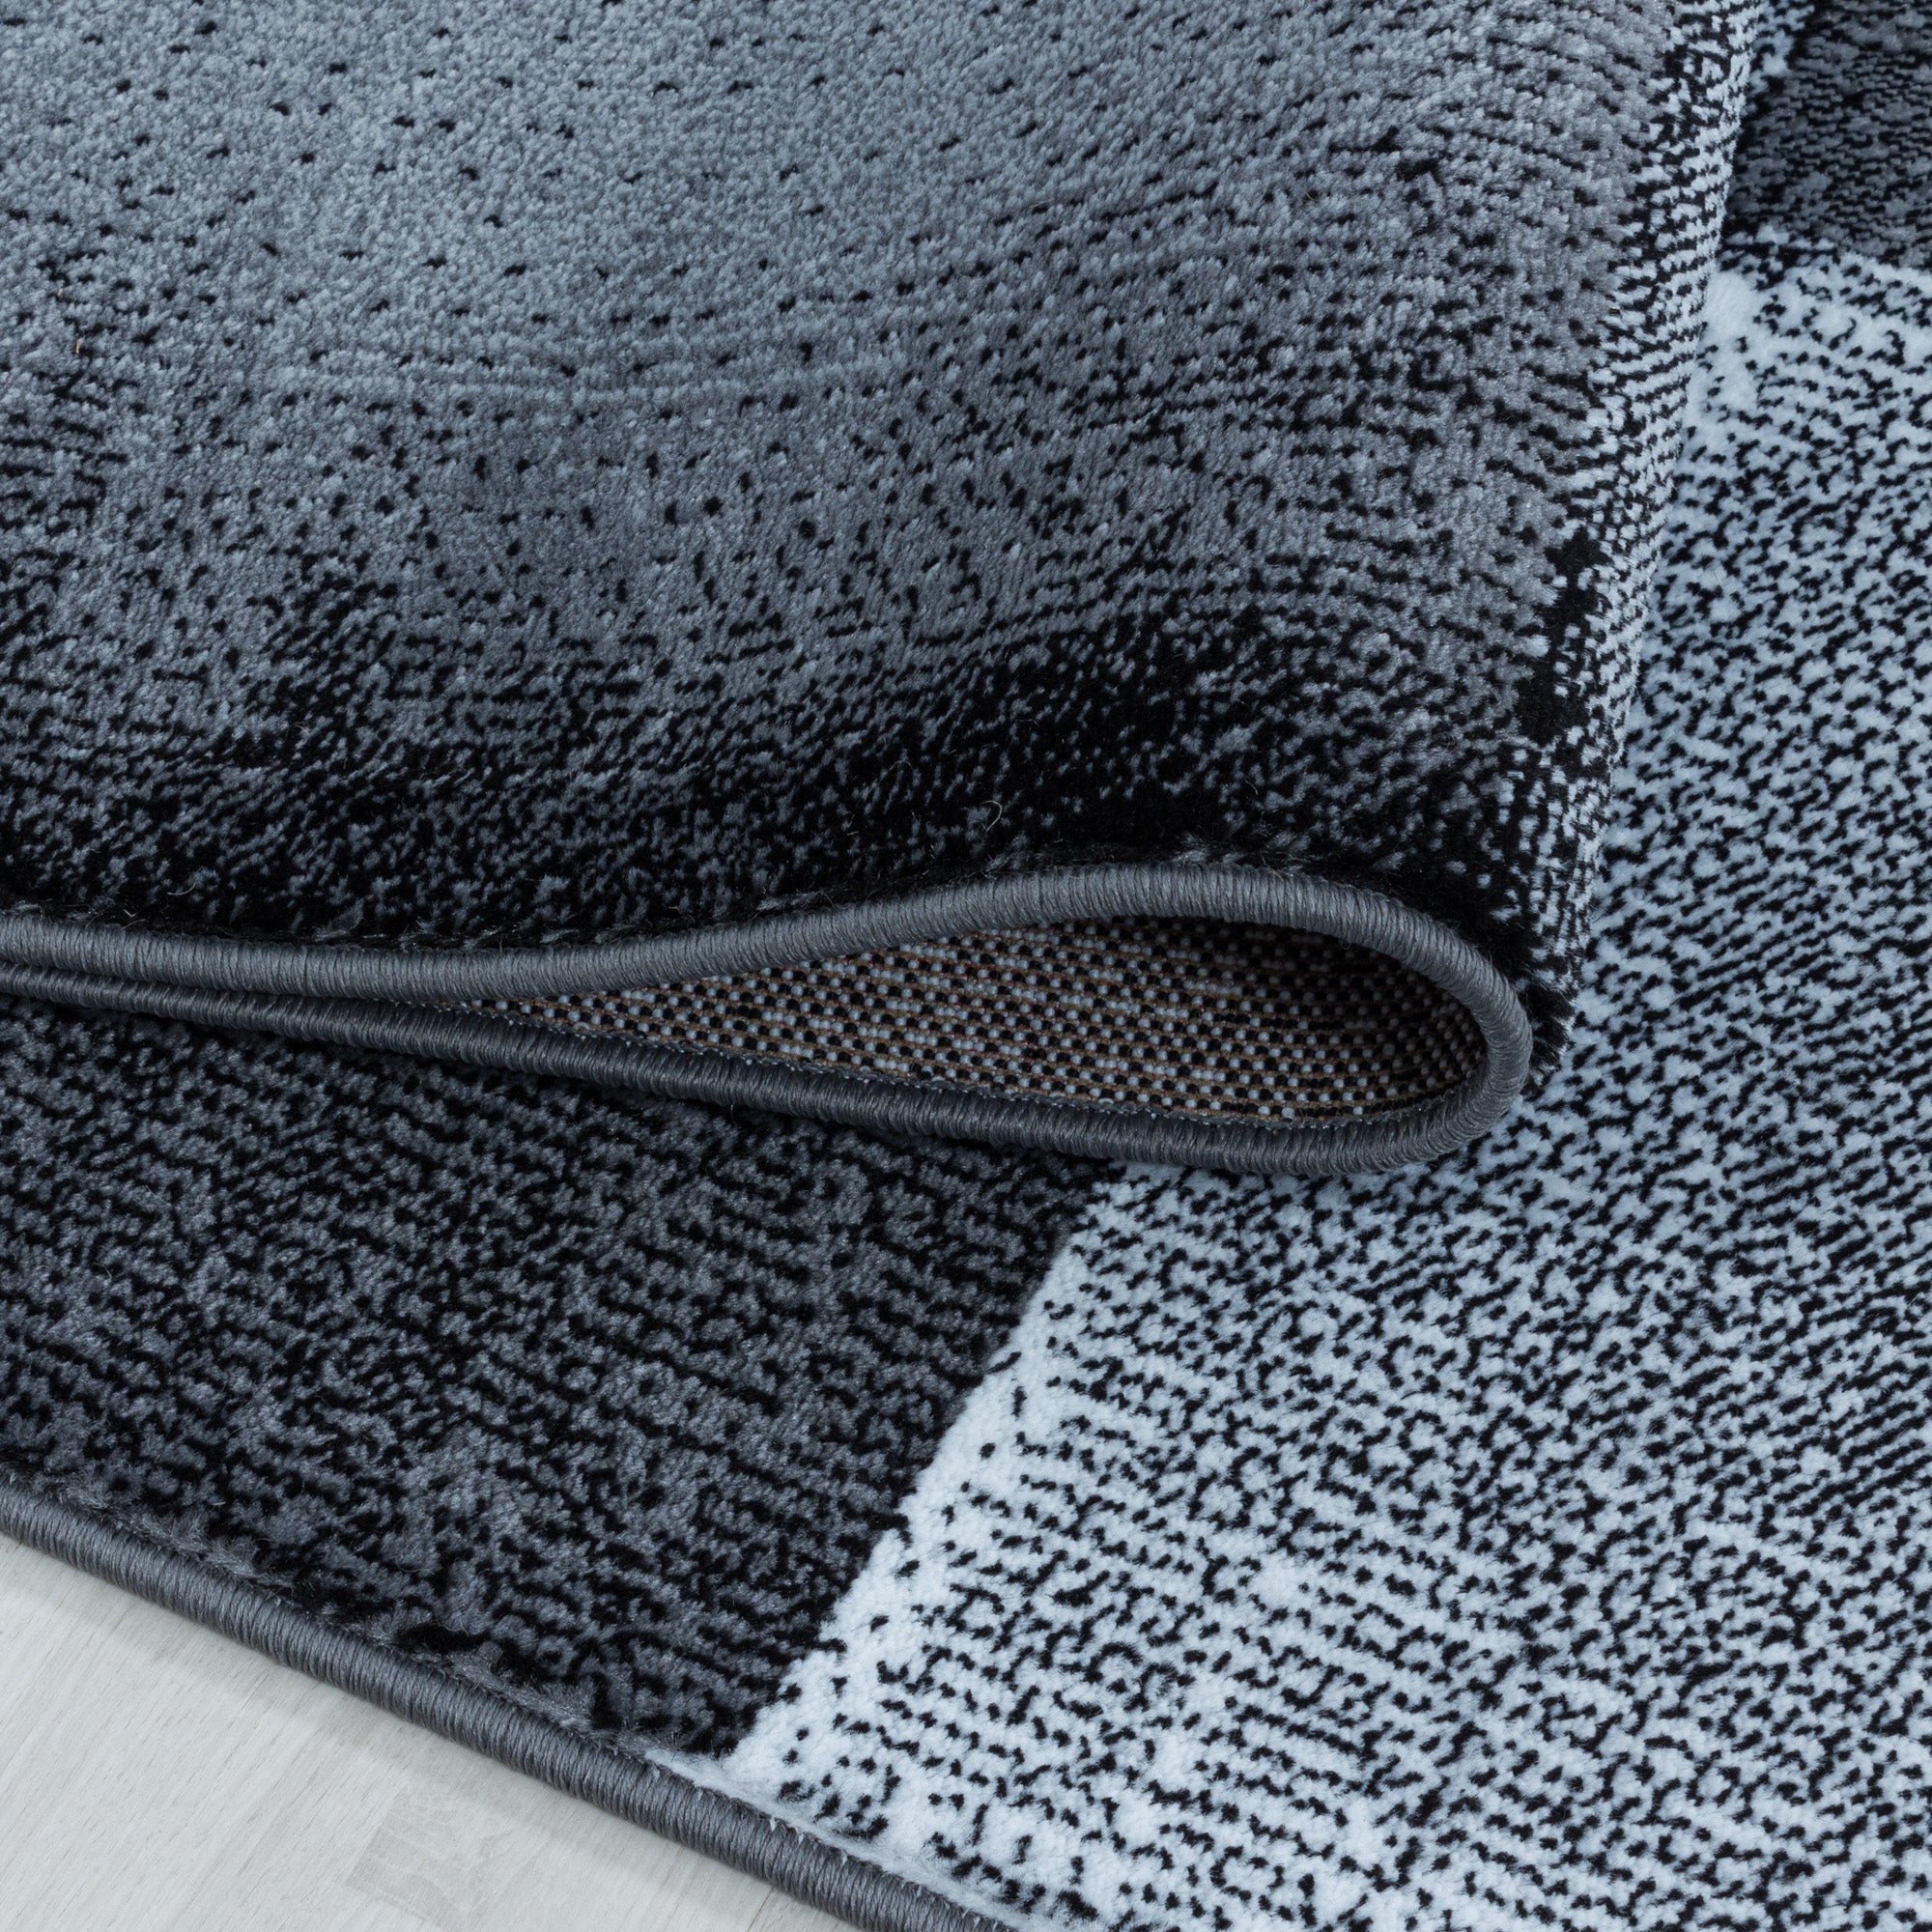 Kurzflor Teppich Set Schlafzimmer Läufer Viereck Gitter Design 3 Teile Schwarz